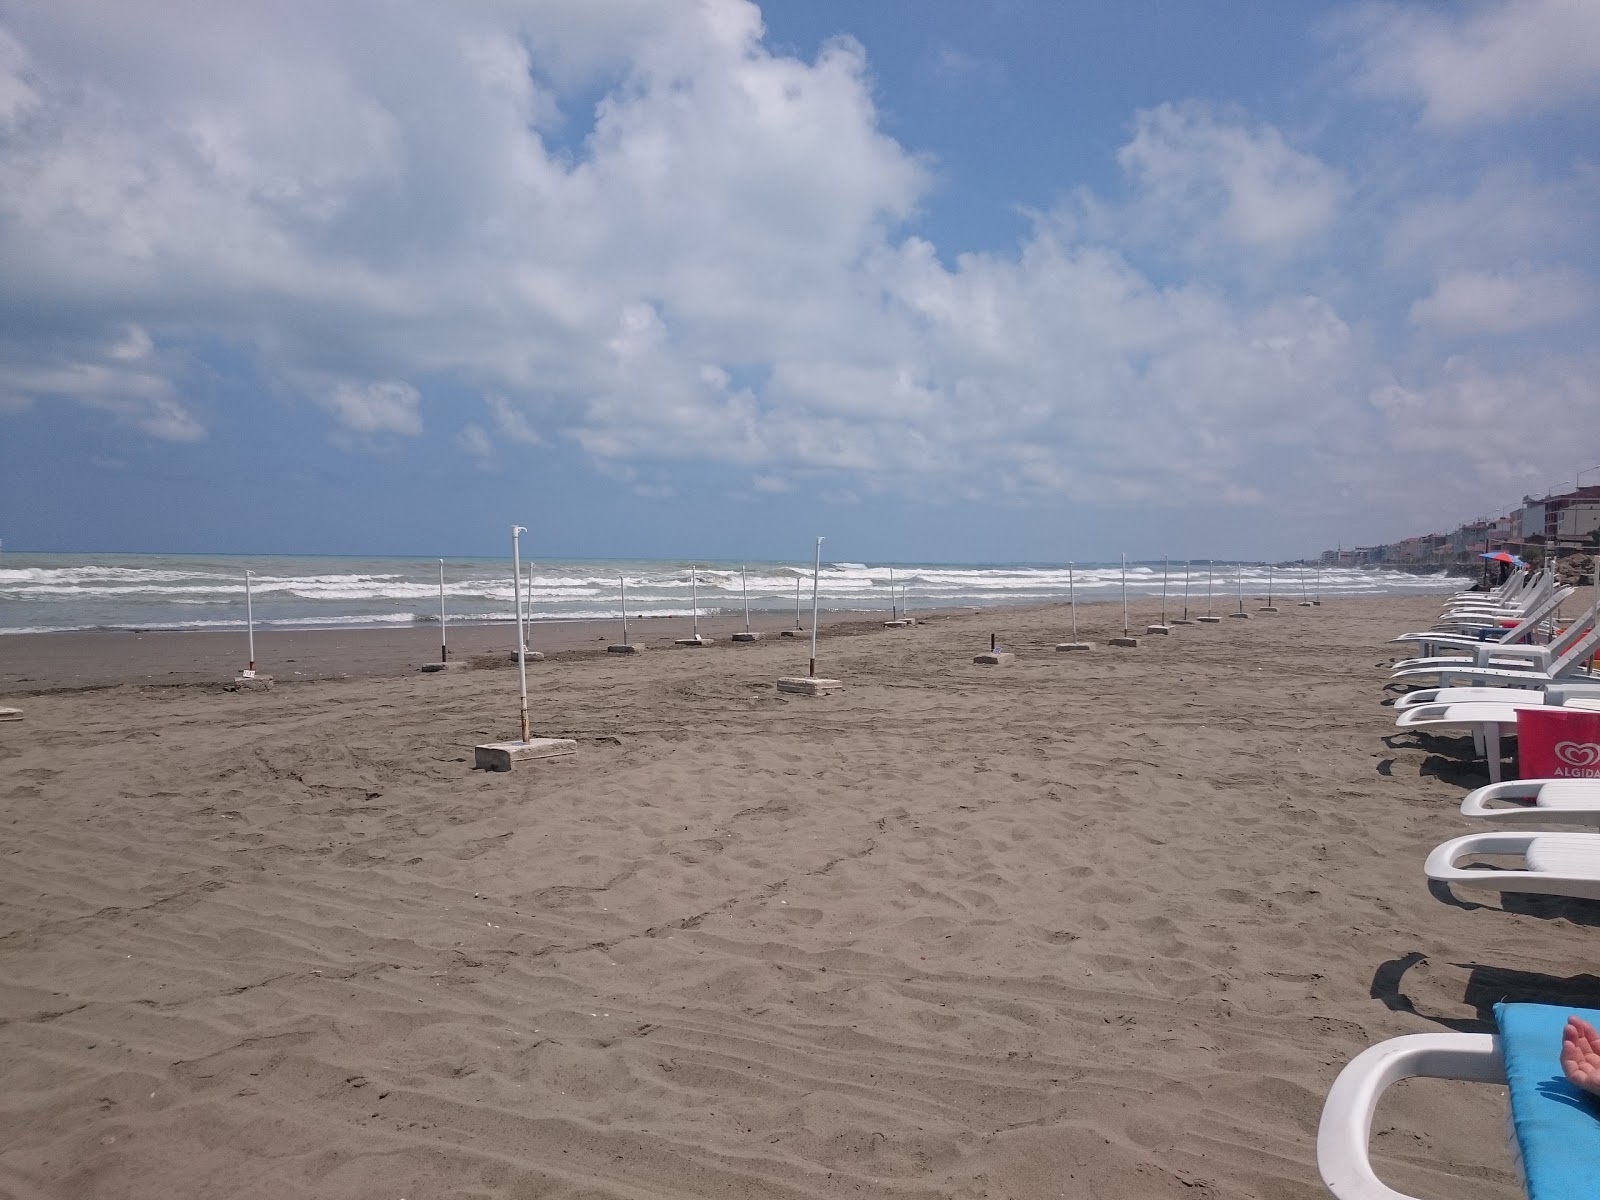 Yakakent Aile Plaji'in fotoğrafı plaj tatil beldesi alanı